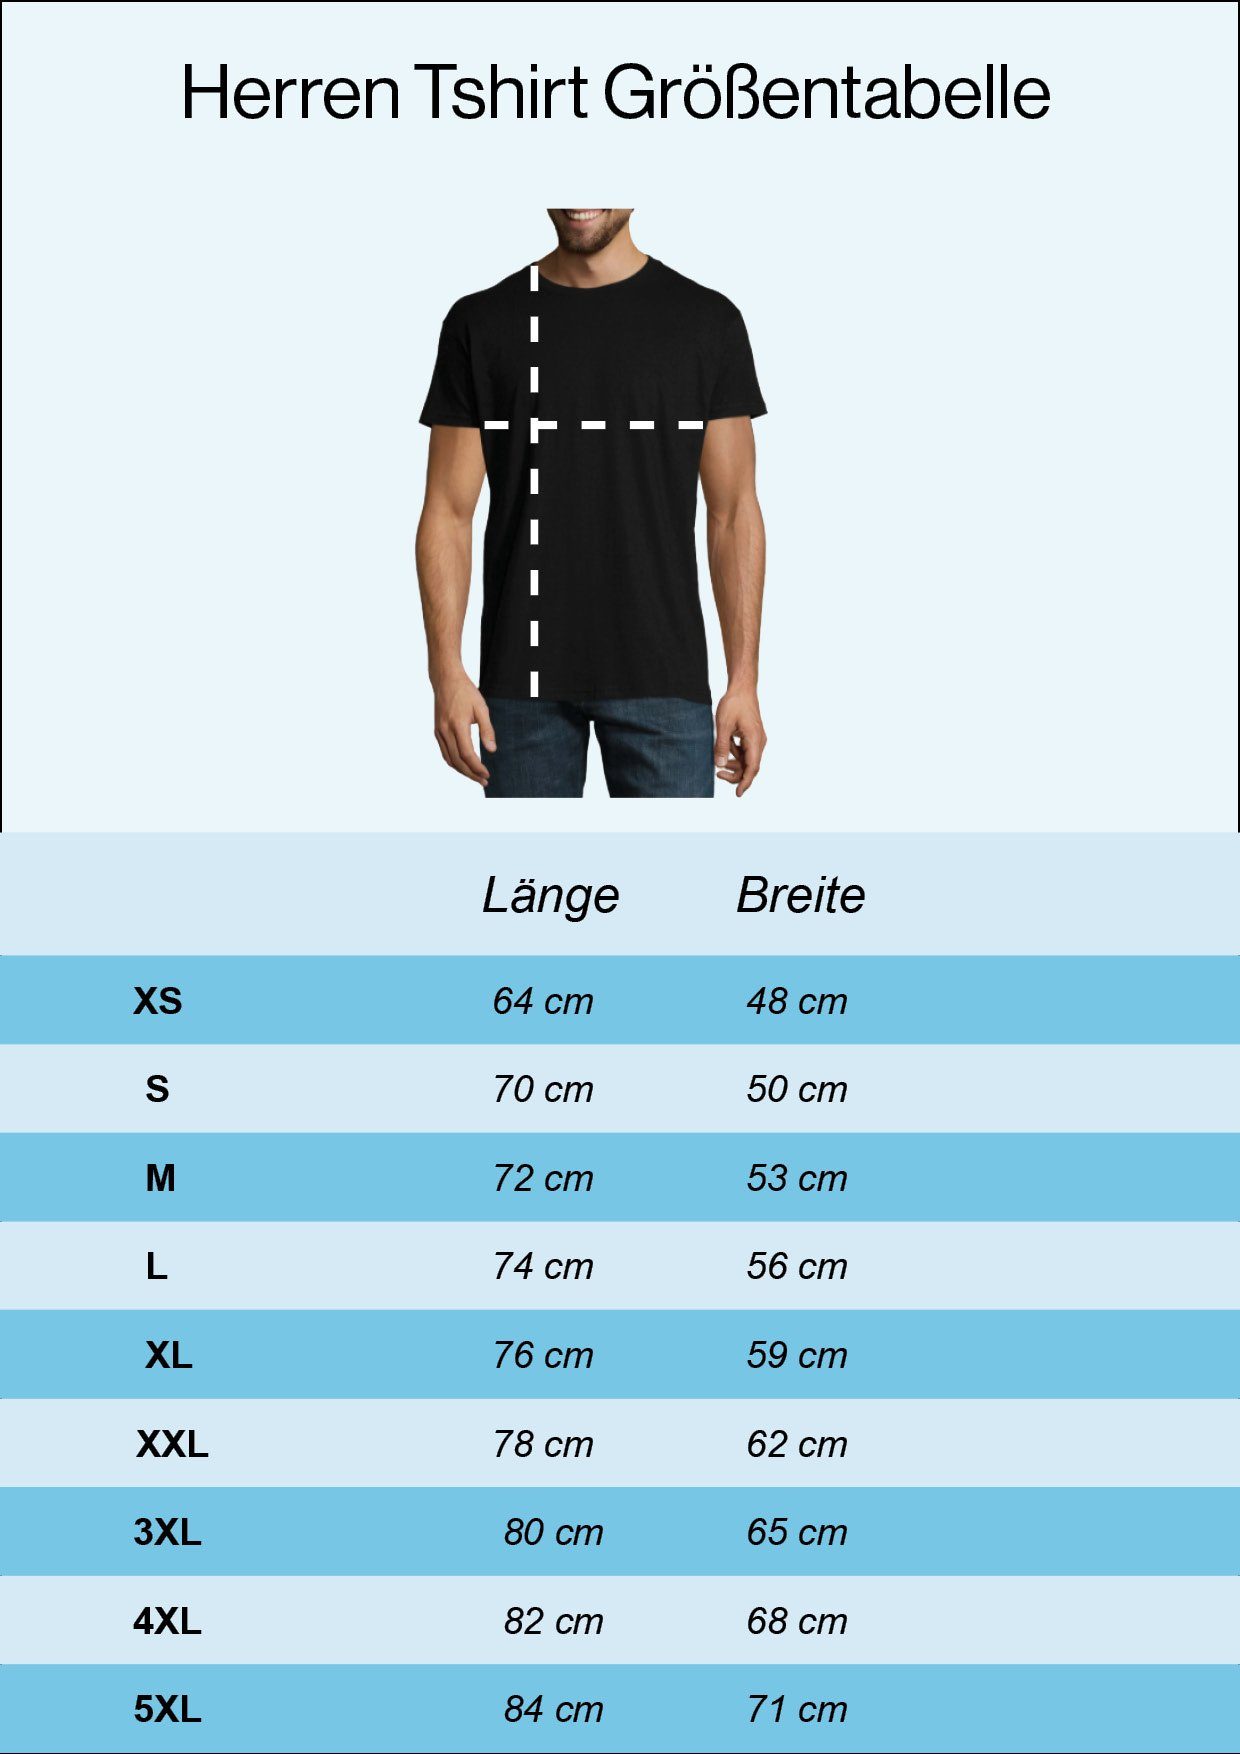 T-Shirt Grau Schachzug trendigem Shirt Frontprint Kluger Designz mit Herren Ein Youth